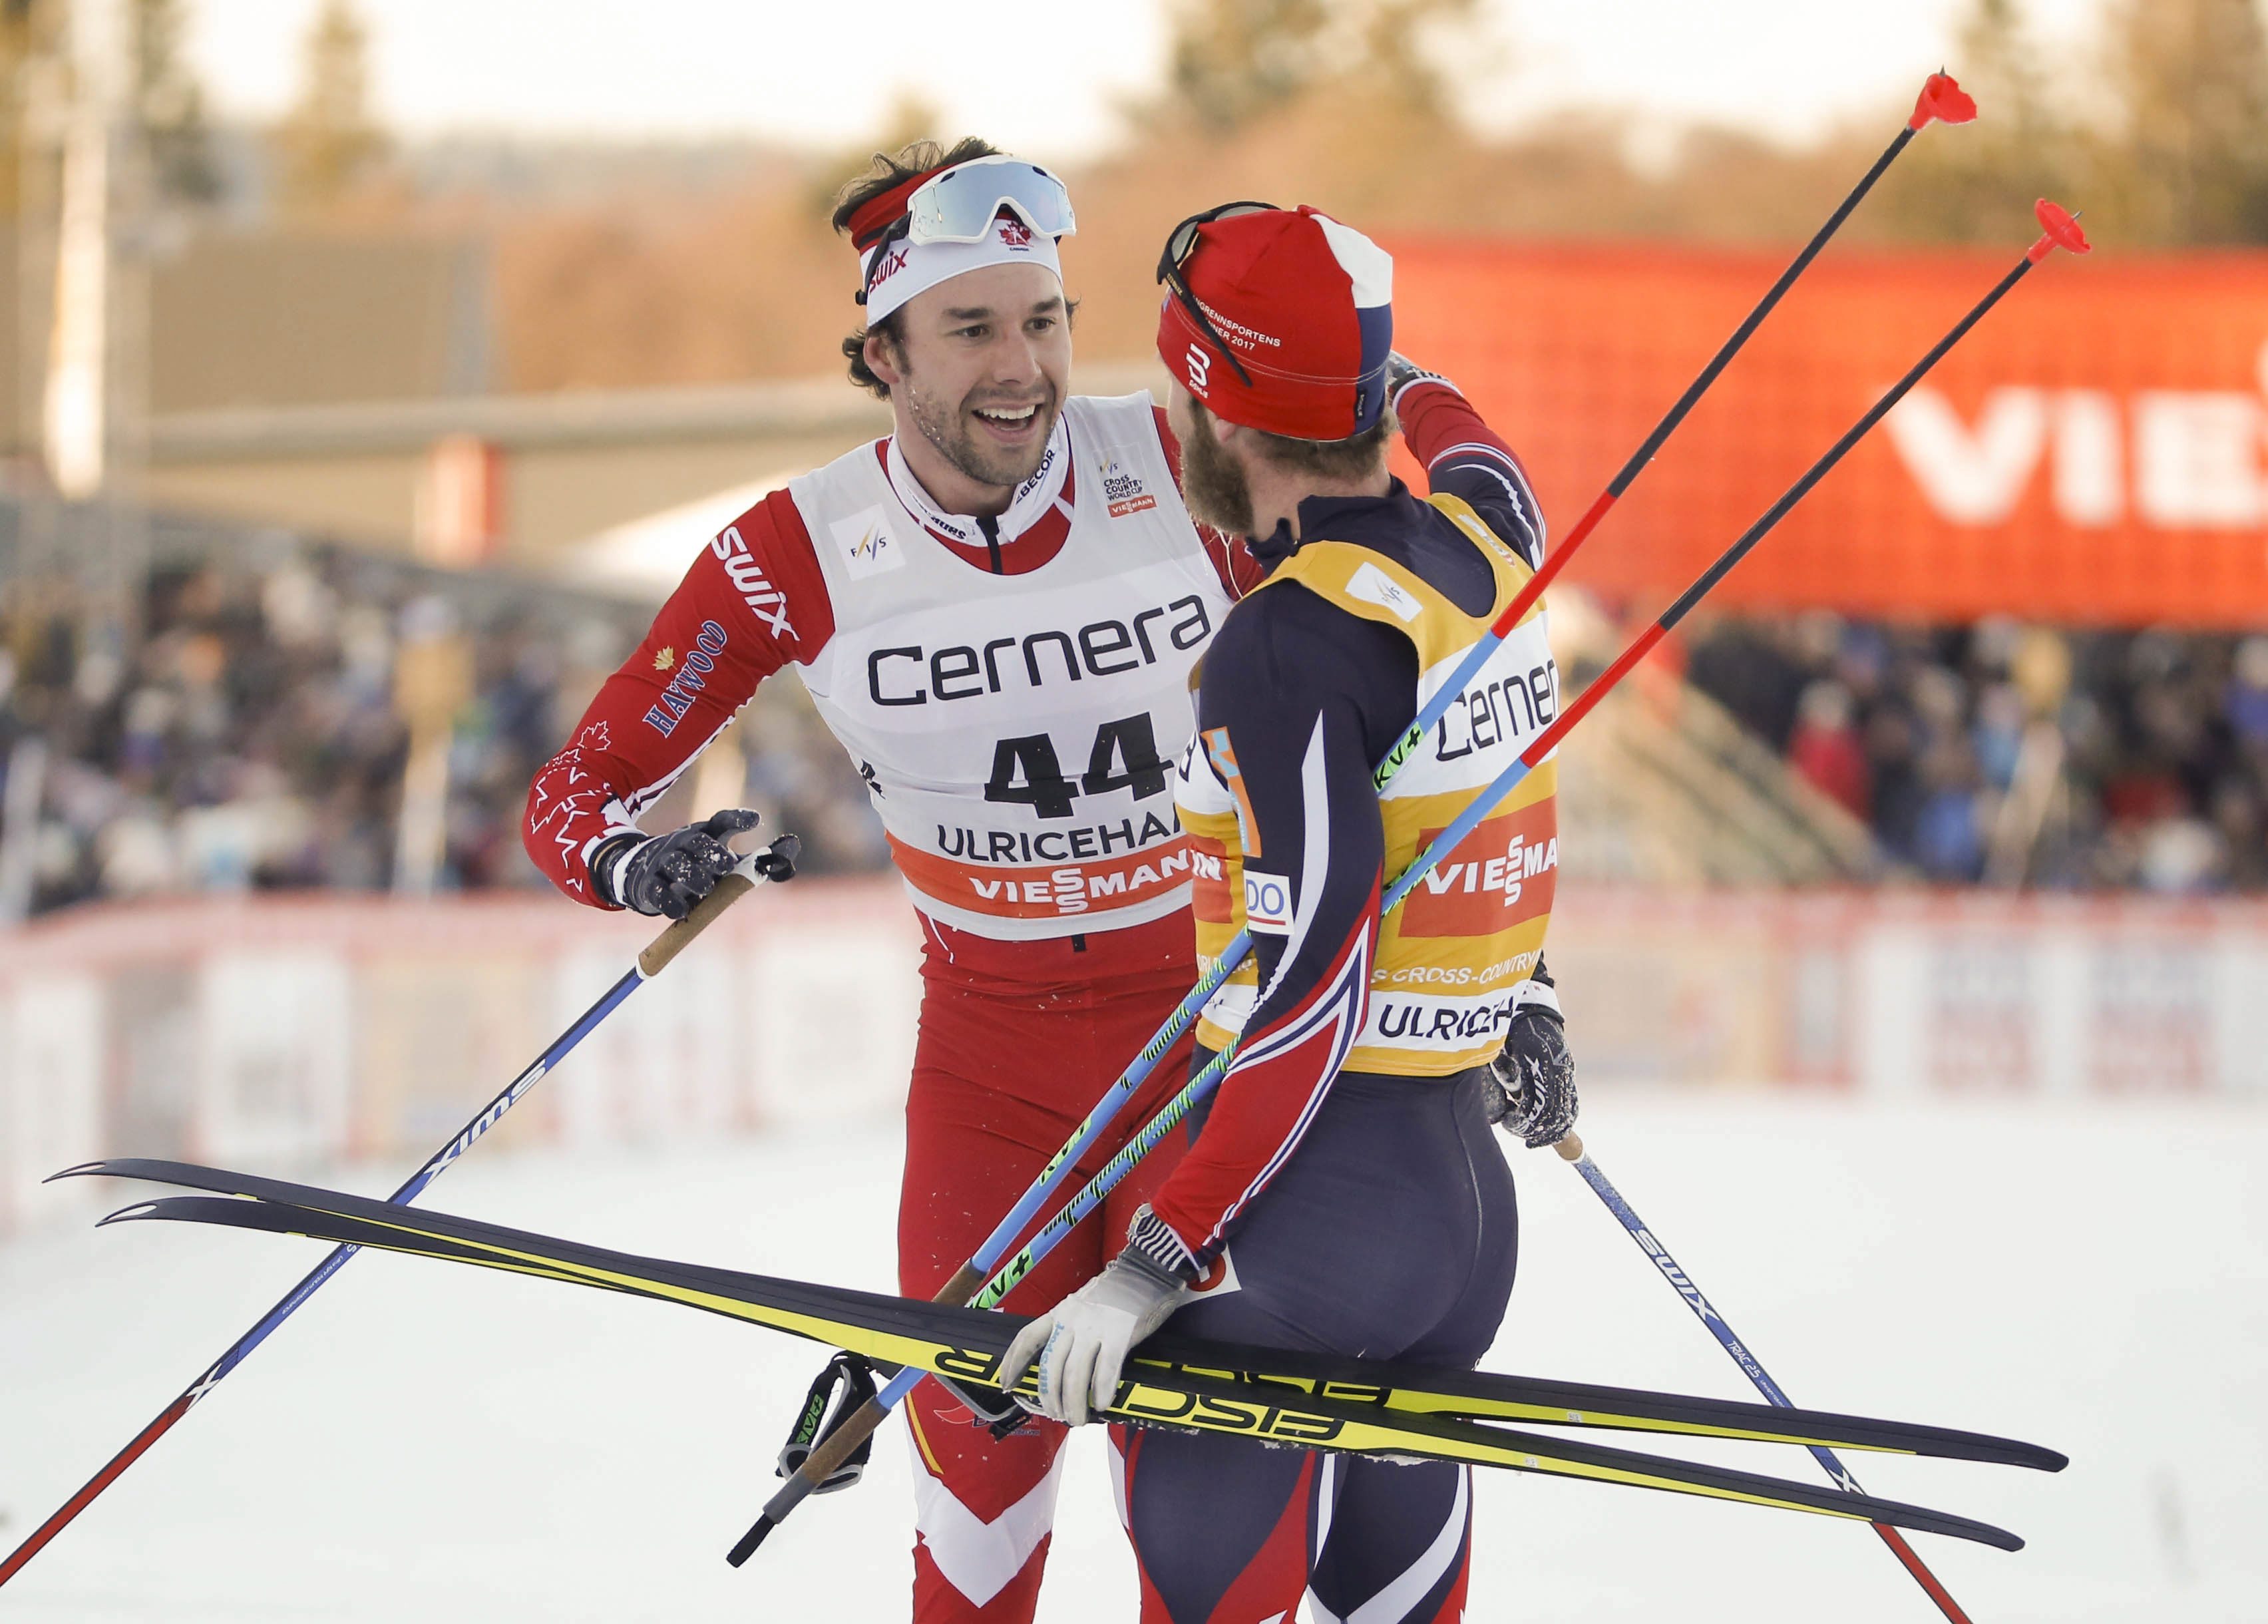 Le Canadien Alex Harvey, à gauche, reçoit les félicitations du Norvégien Martin Johnsrud Sundby après sa victoire au 15 kilomères style libre masculin de l’arrêt de la Coupe du monde d’Ulricehamn en Suède le samedi 21 janvier 2017. (Adam Ihse / TT via AP)